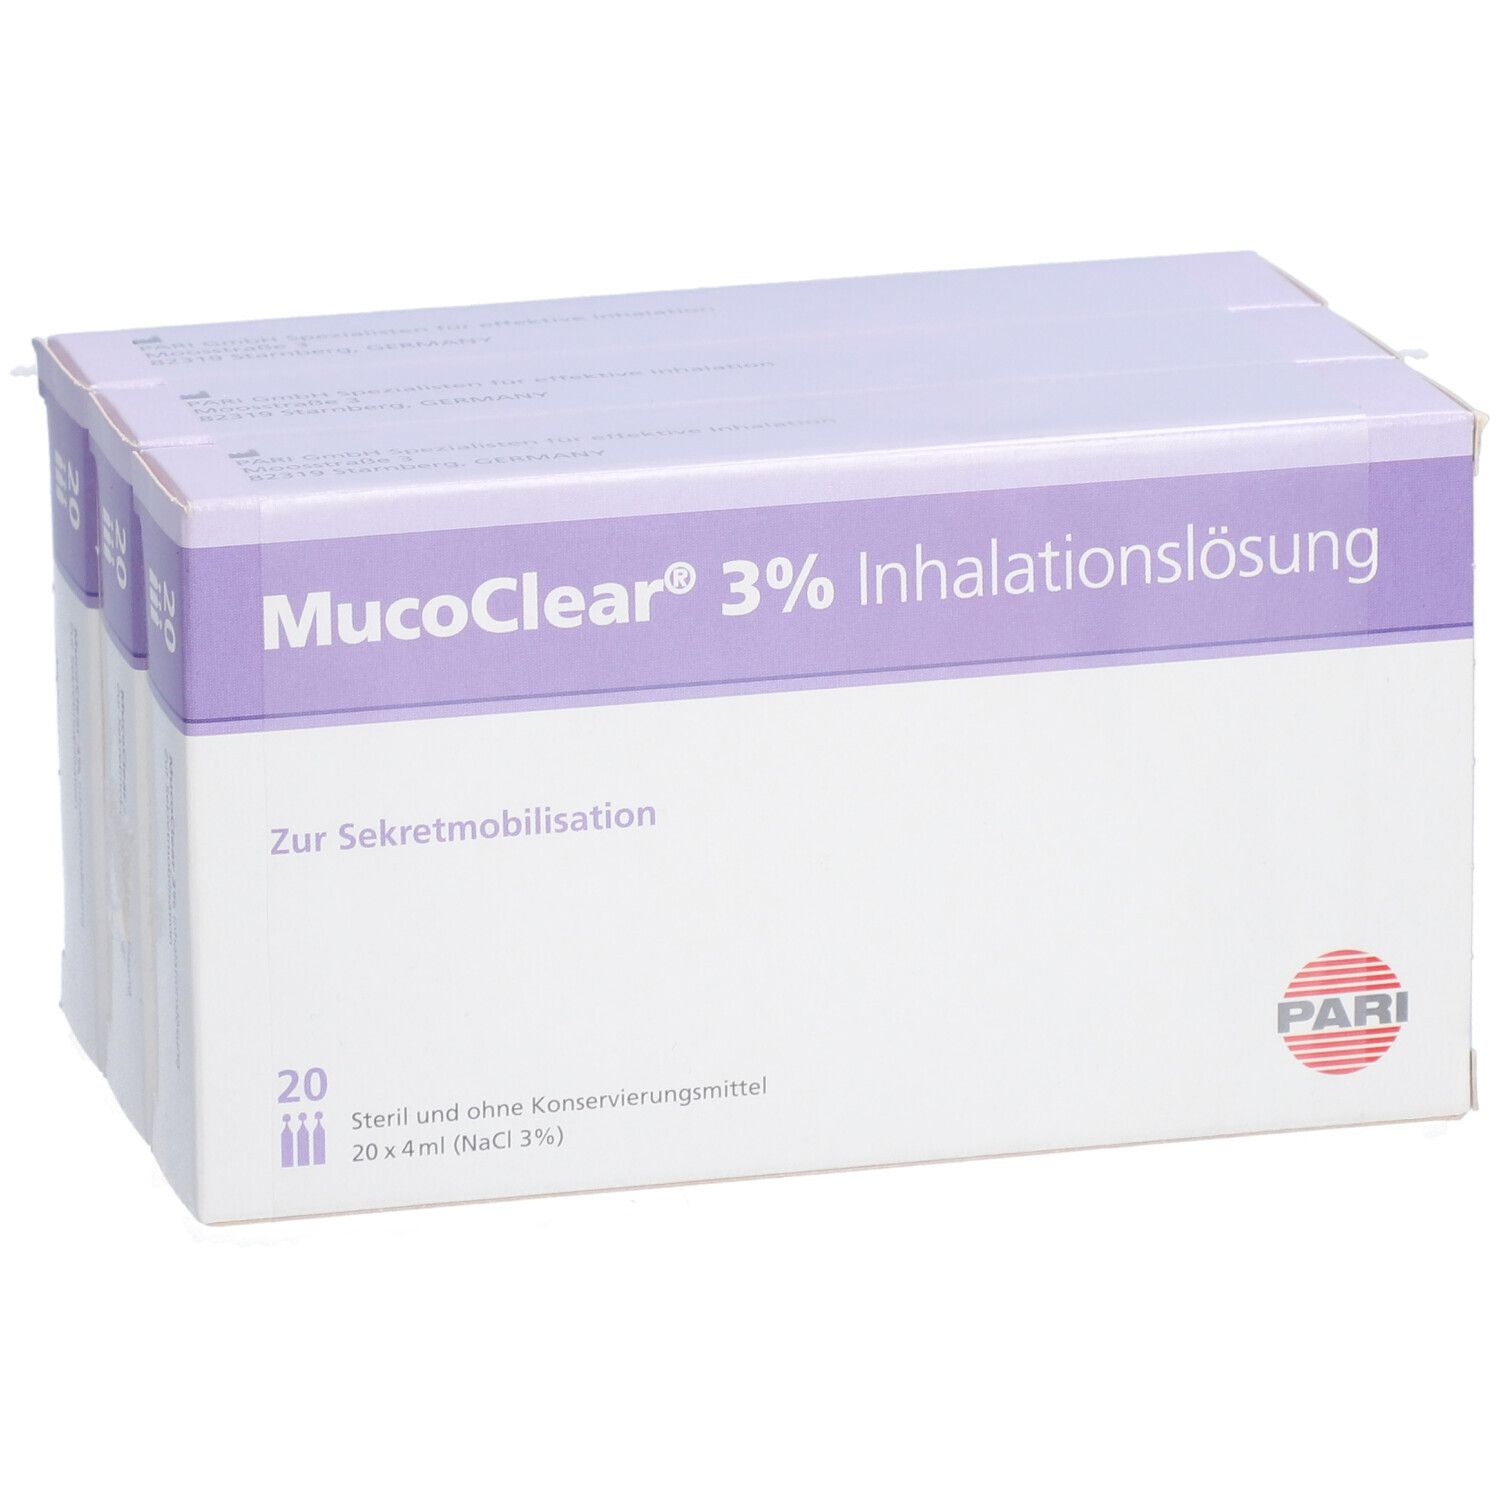 MucoClear® 3% Inhalationslösung